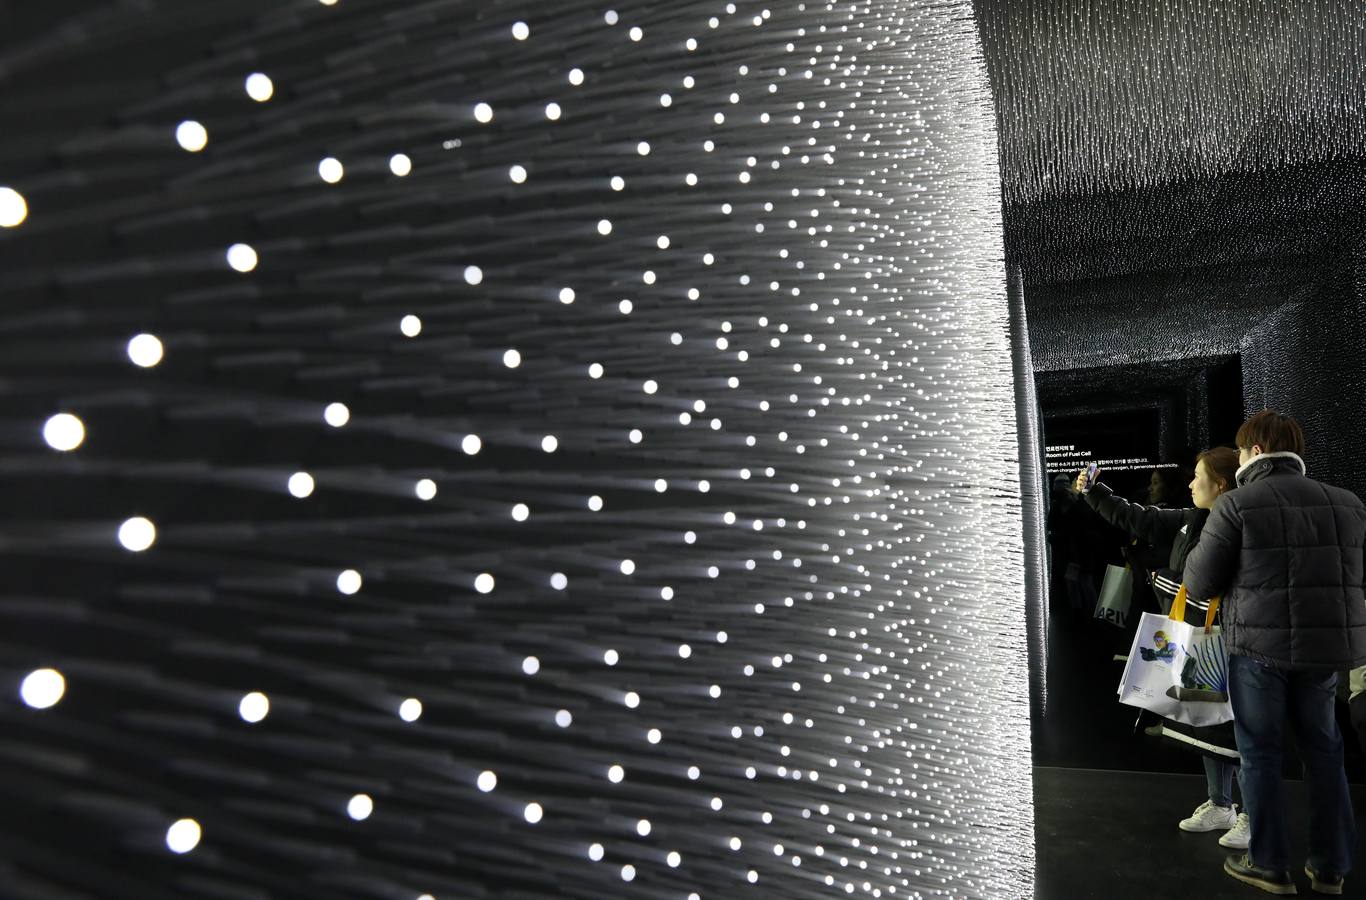 El Pabellón Hyundai, diseñado por el arquitecto Asif Khan para los Juegos Olímpicos de Invierno PyeongChang 2018 (Corea del Sur), ha sido cubierto con Vantablack Vbx2, los pigmentos más negros jamás inventados, que absorbe el 99 por ciento de la luz que llega a su superficie. 